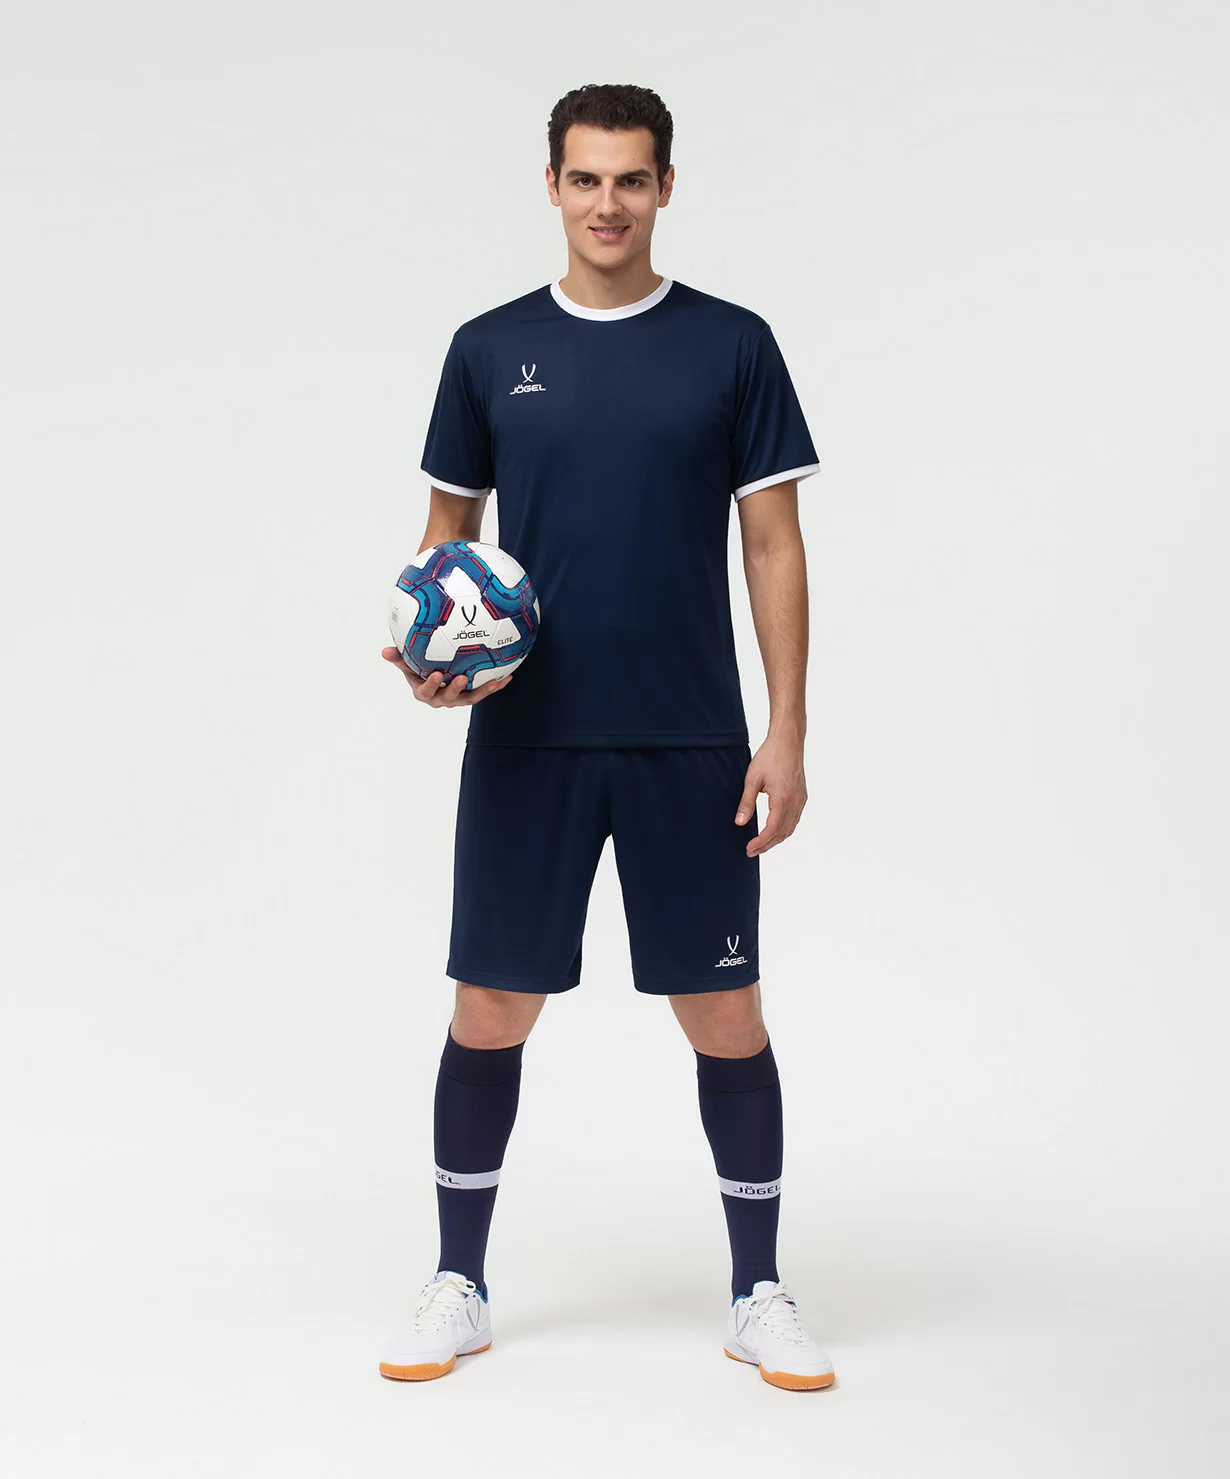 Реальное фото Футболка футбольная CAMP Origin, темно-синий/белый Jögel от магазина Спортев